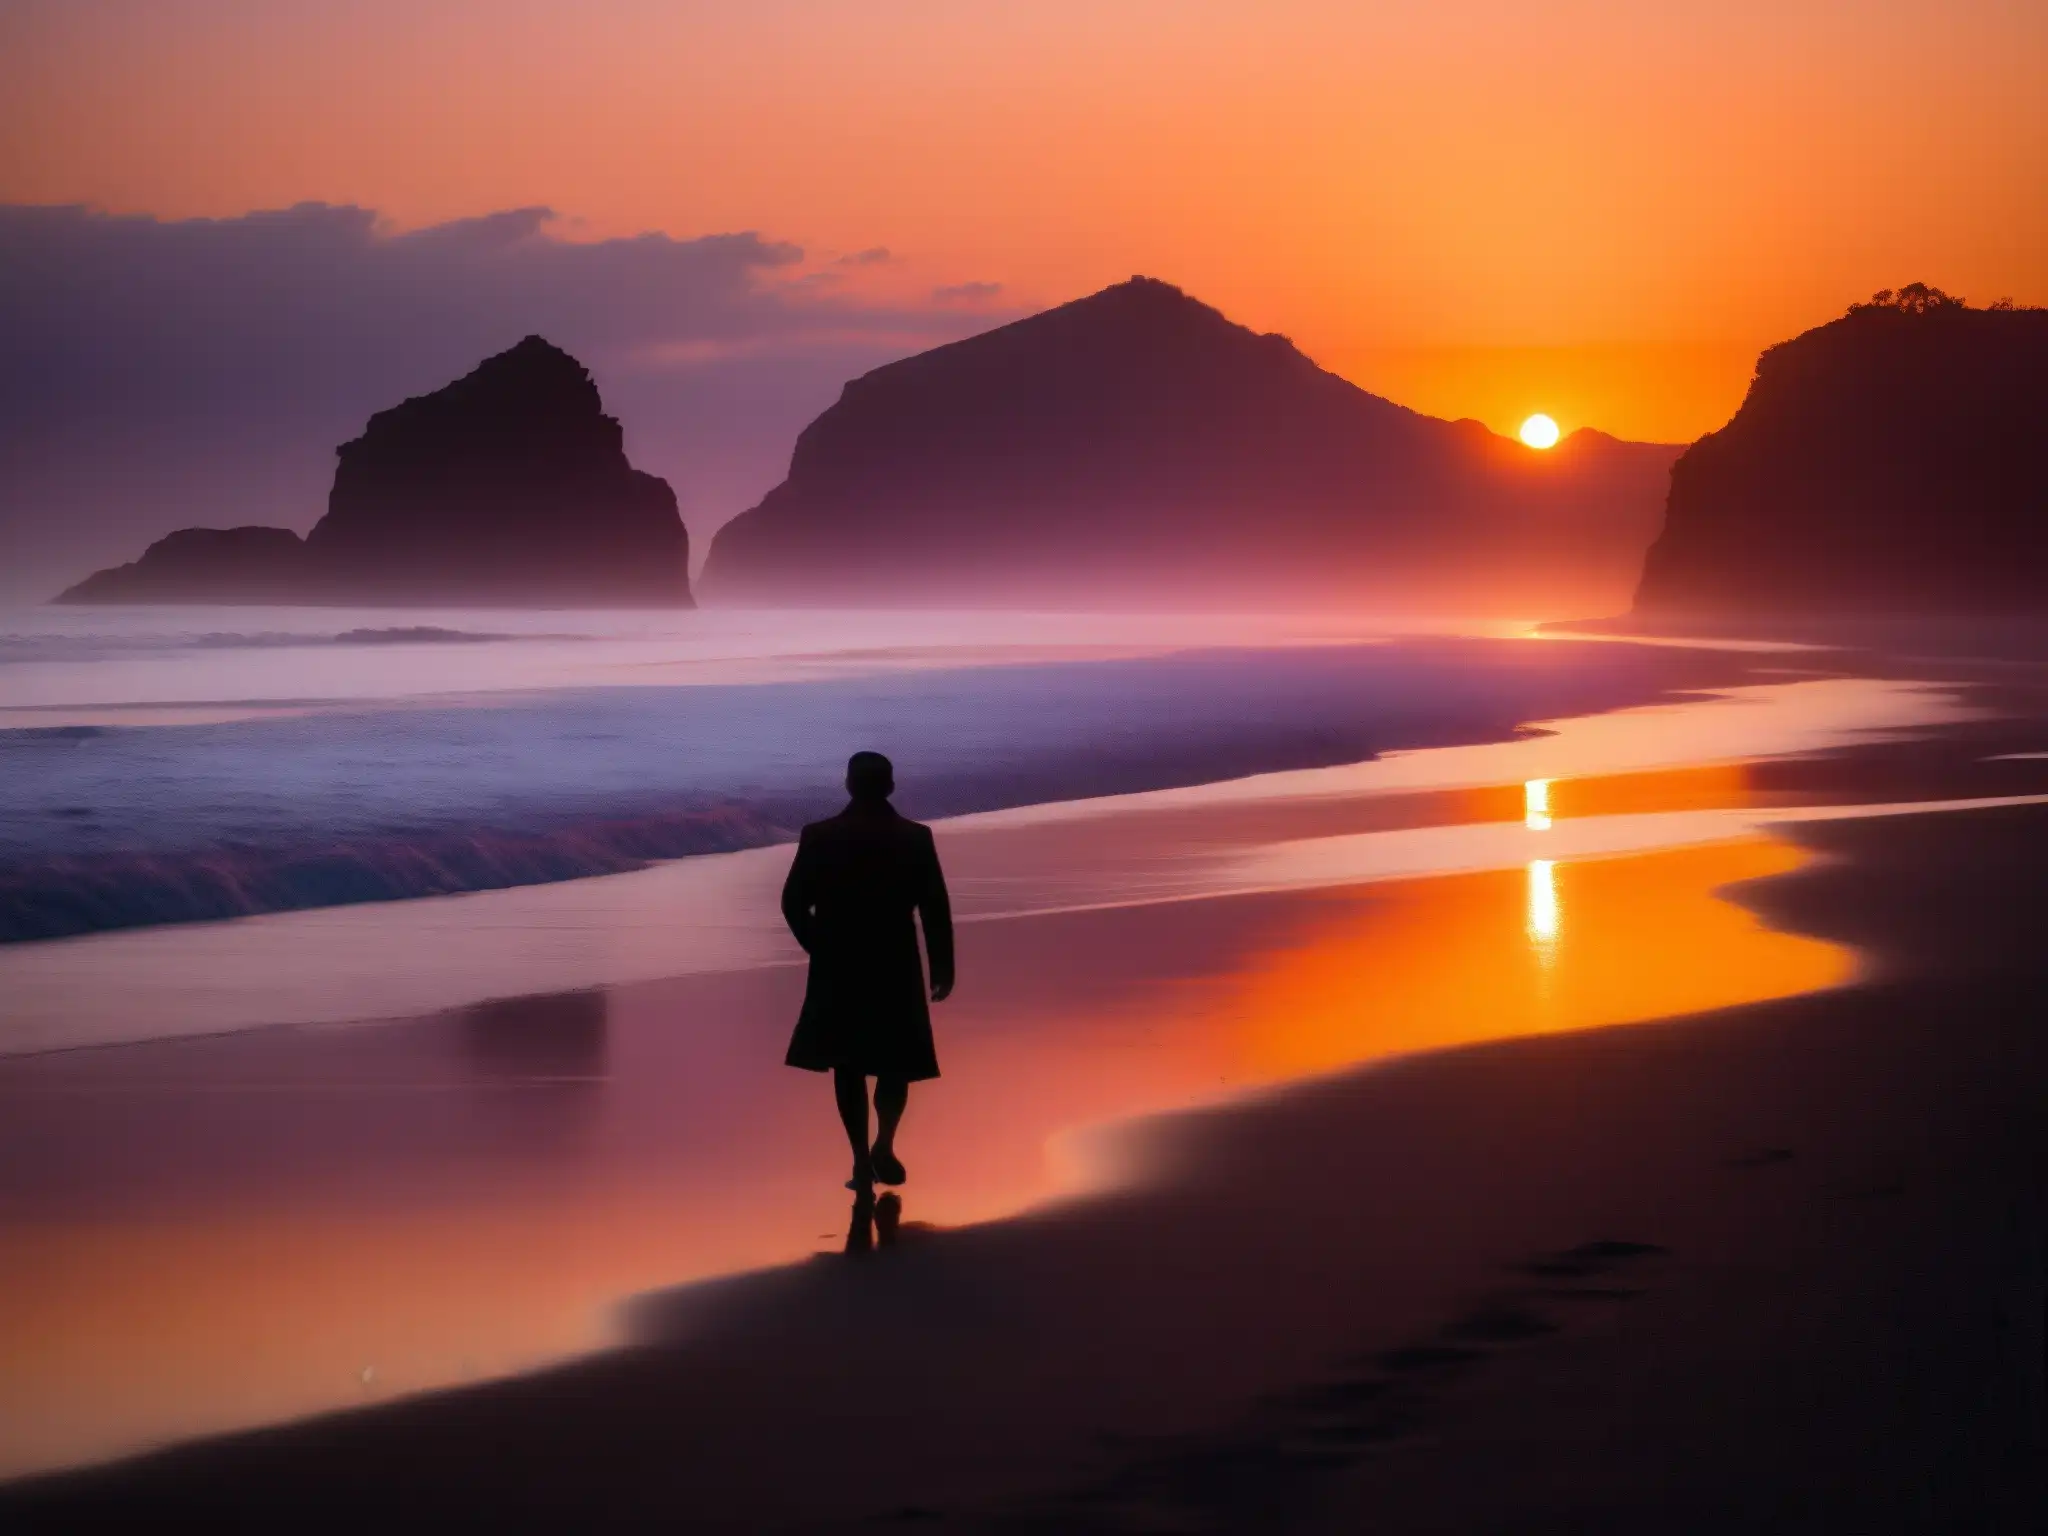 Un paseo solitario al atardecer en Dumas Beach, capturando la misteriosa atmósfera de la playa